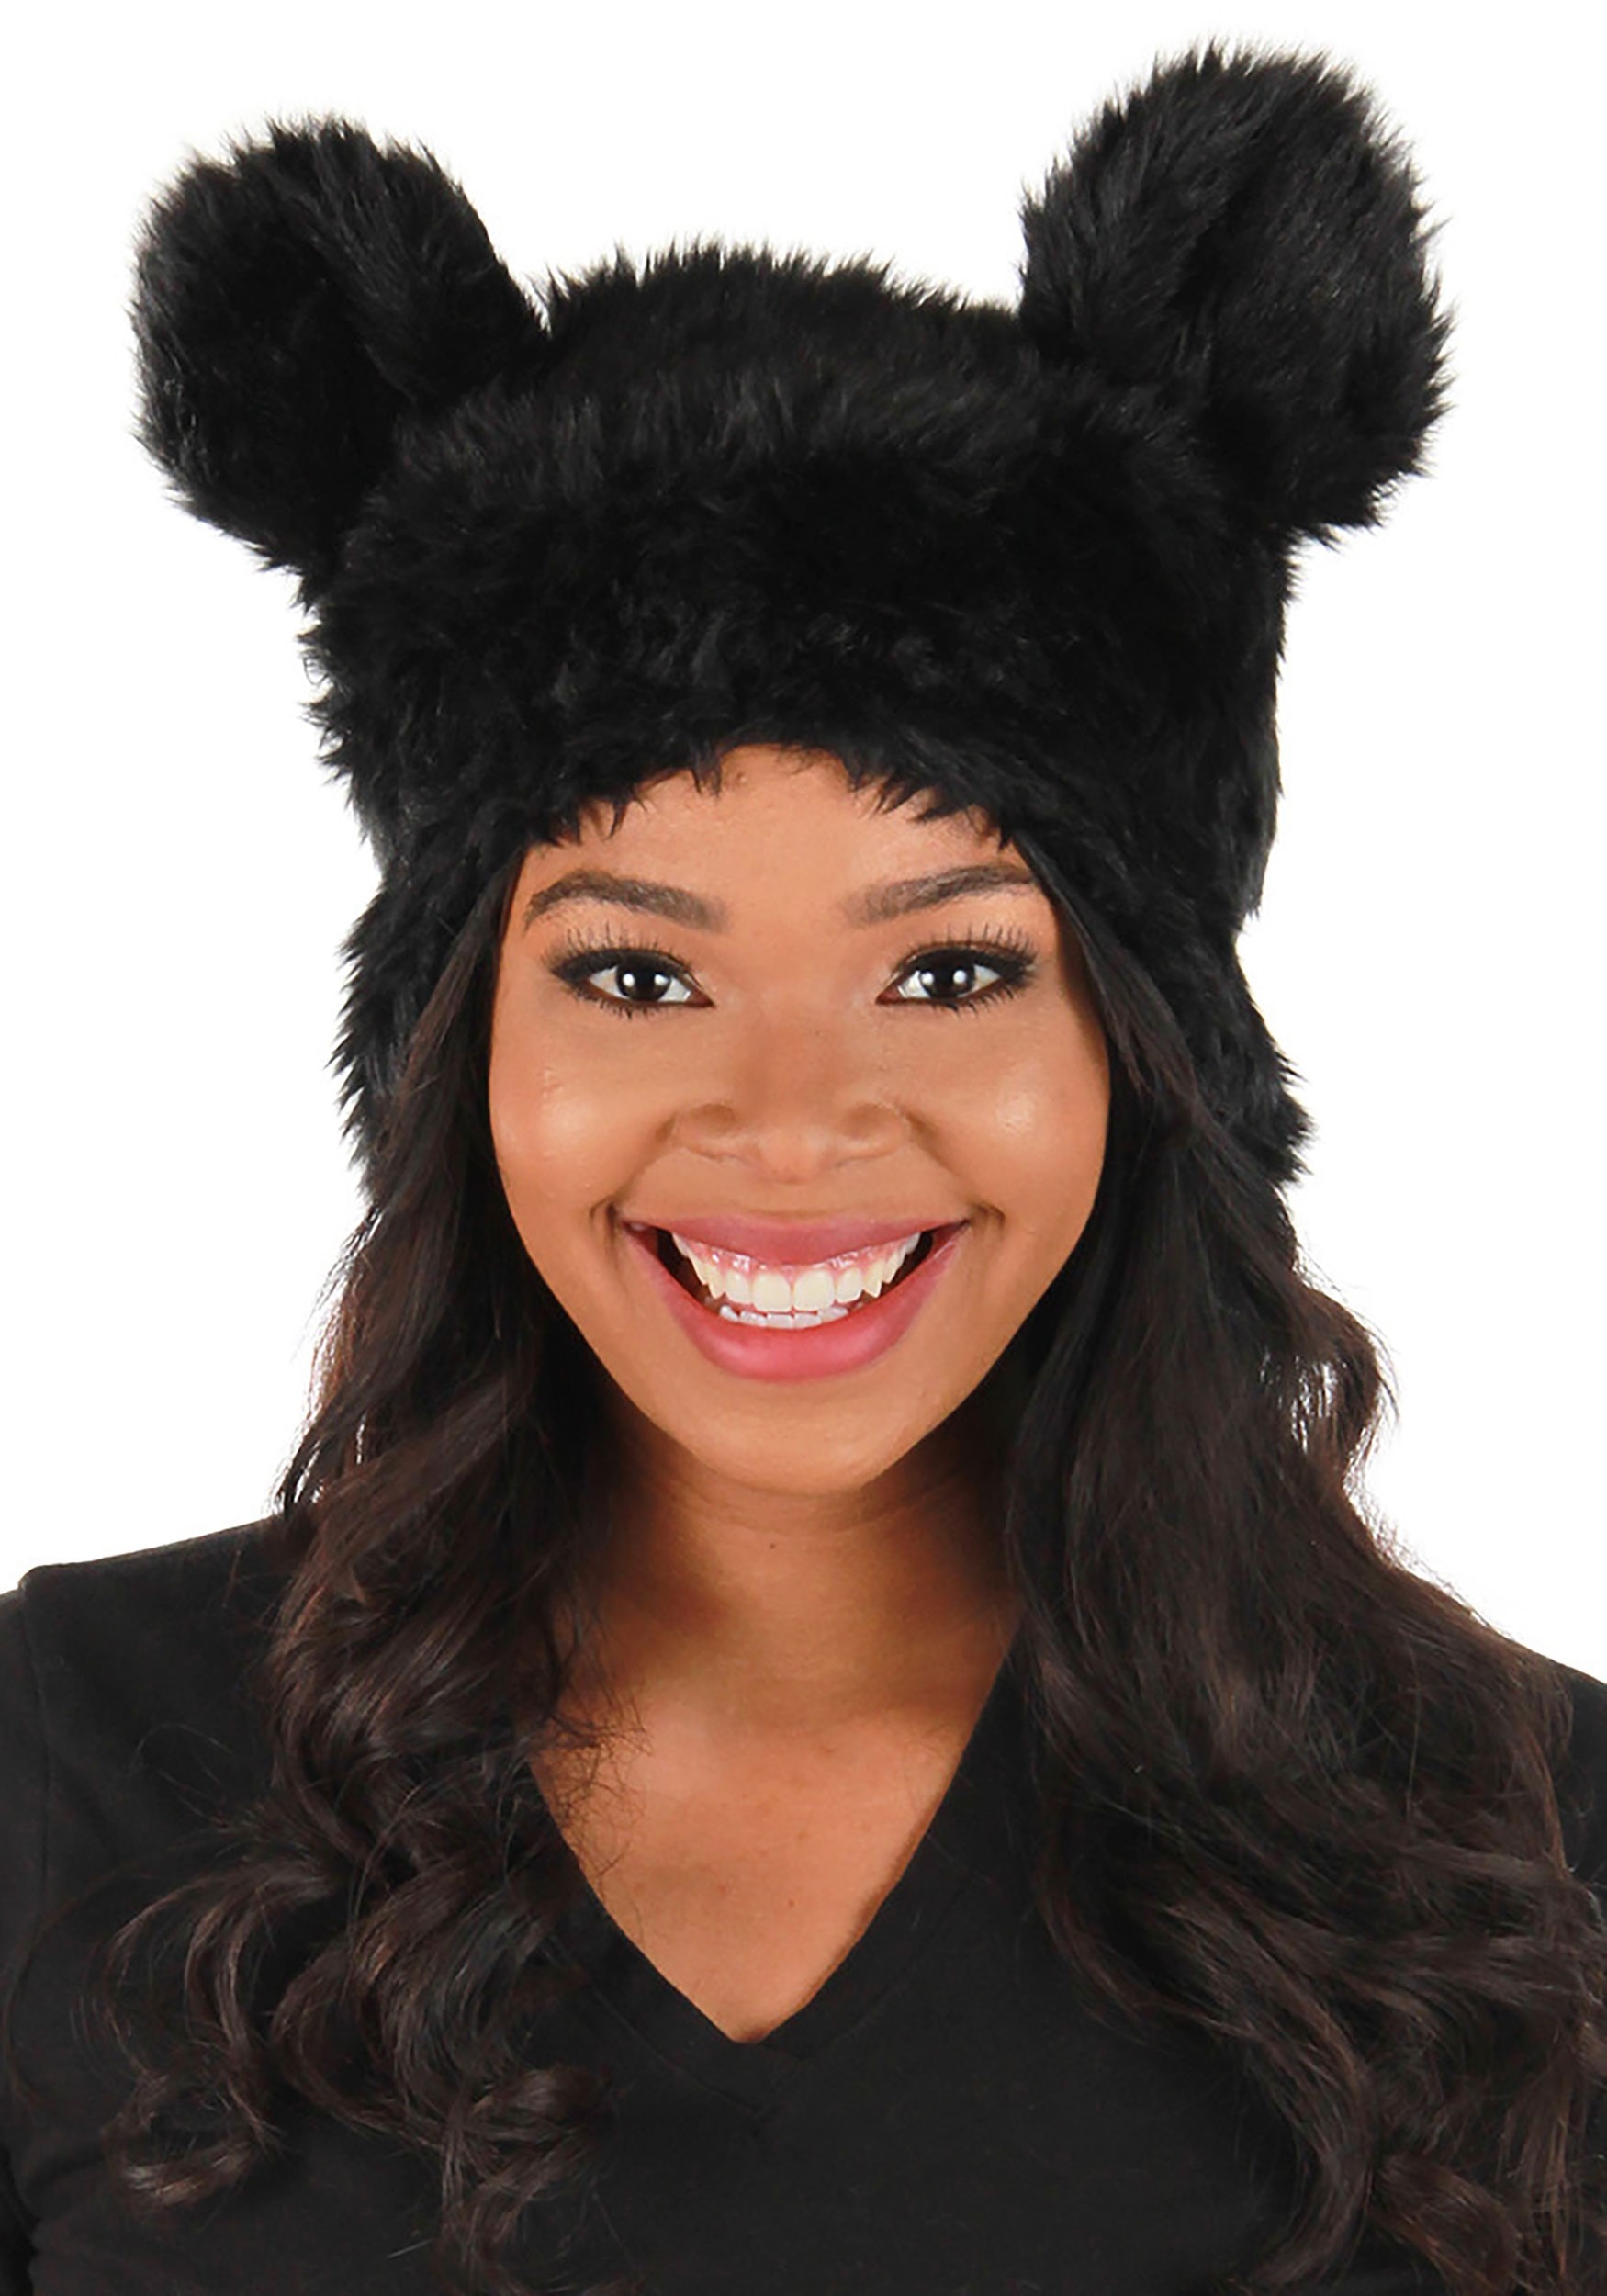 Sombrero de disfraces de felpa para adultos negros Multicolor